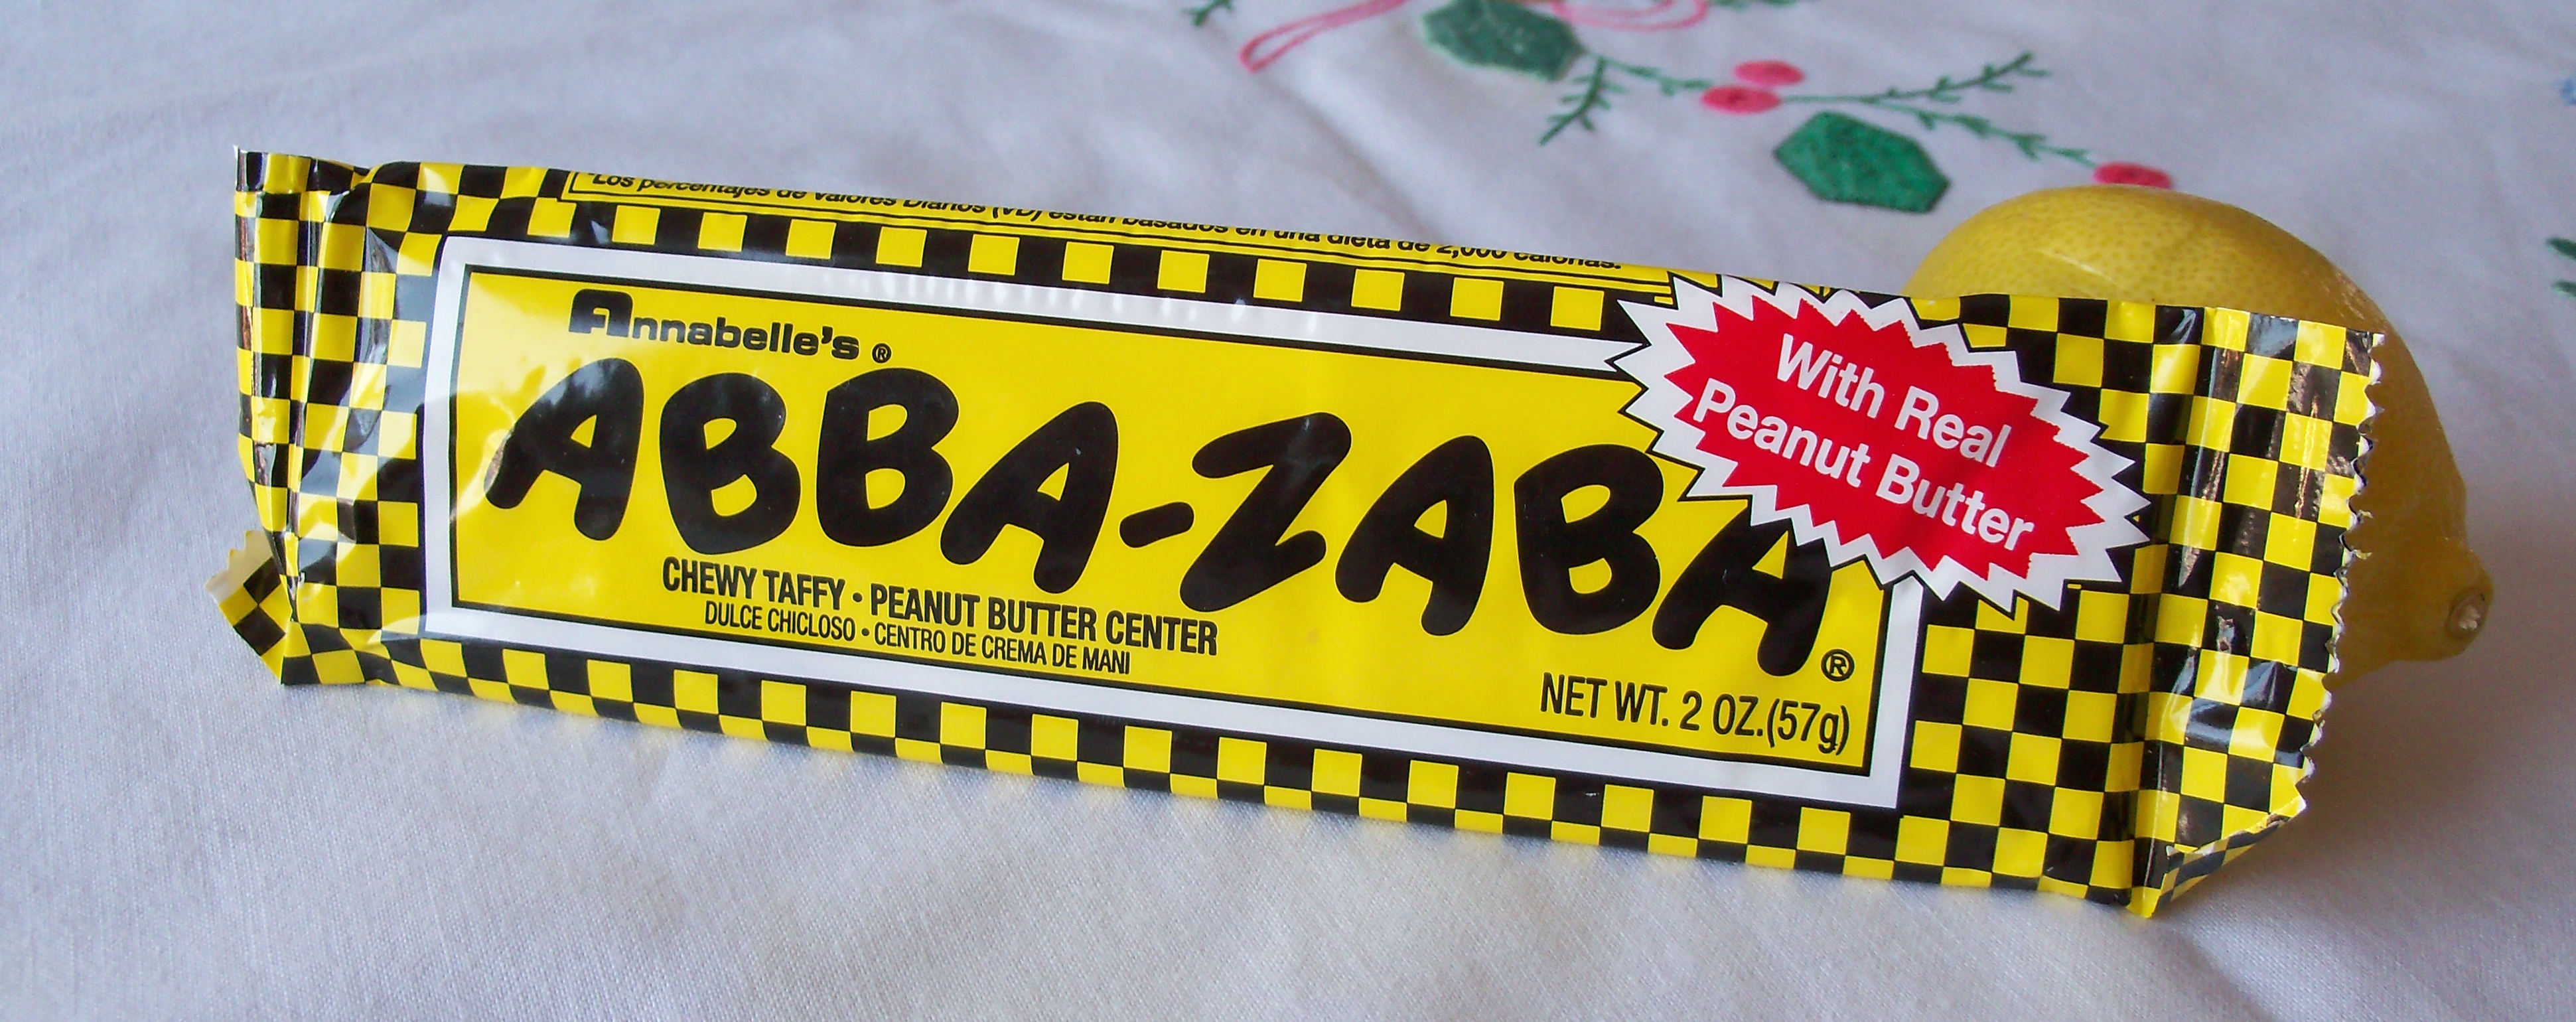 Abba zaba mystery flavor